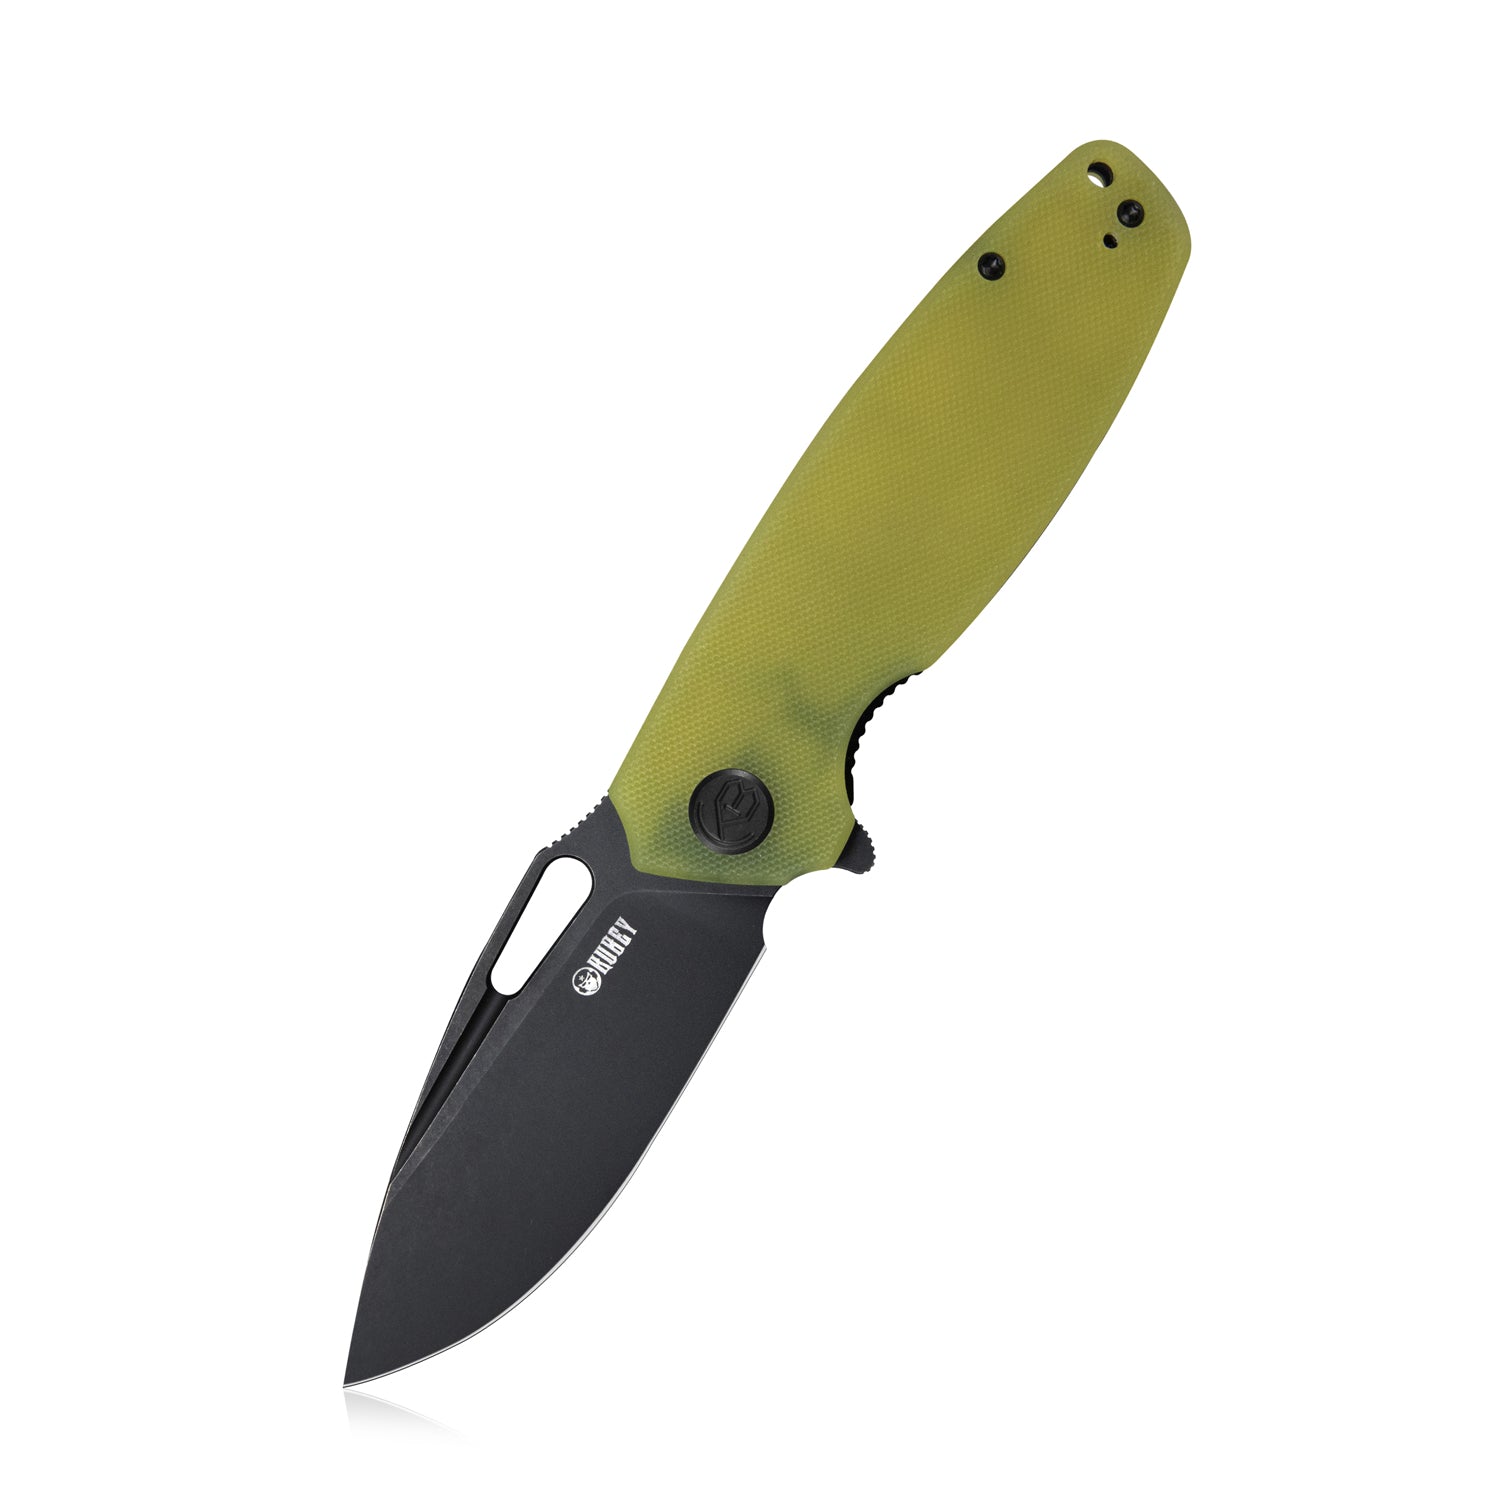 Kubey Tityus Liner Lock Flipper Folding Knife Translucent Yellow G10 Handle 3.39" Dark Stonewashed D2 KU322G